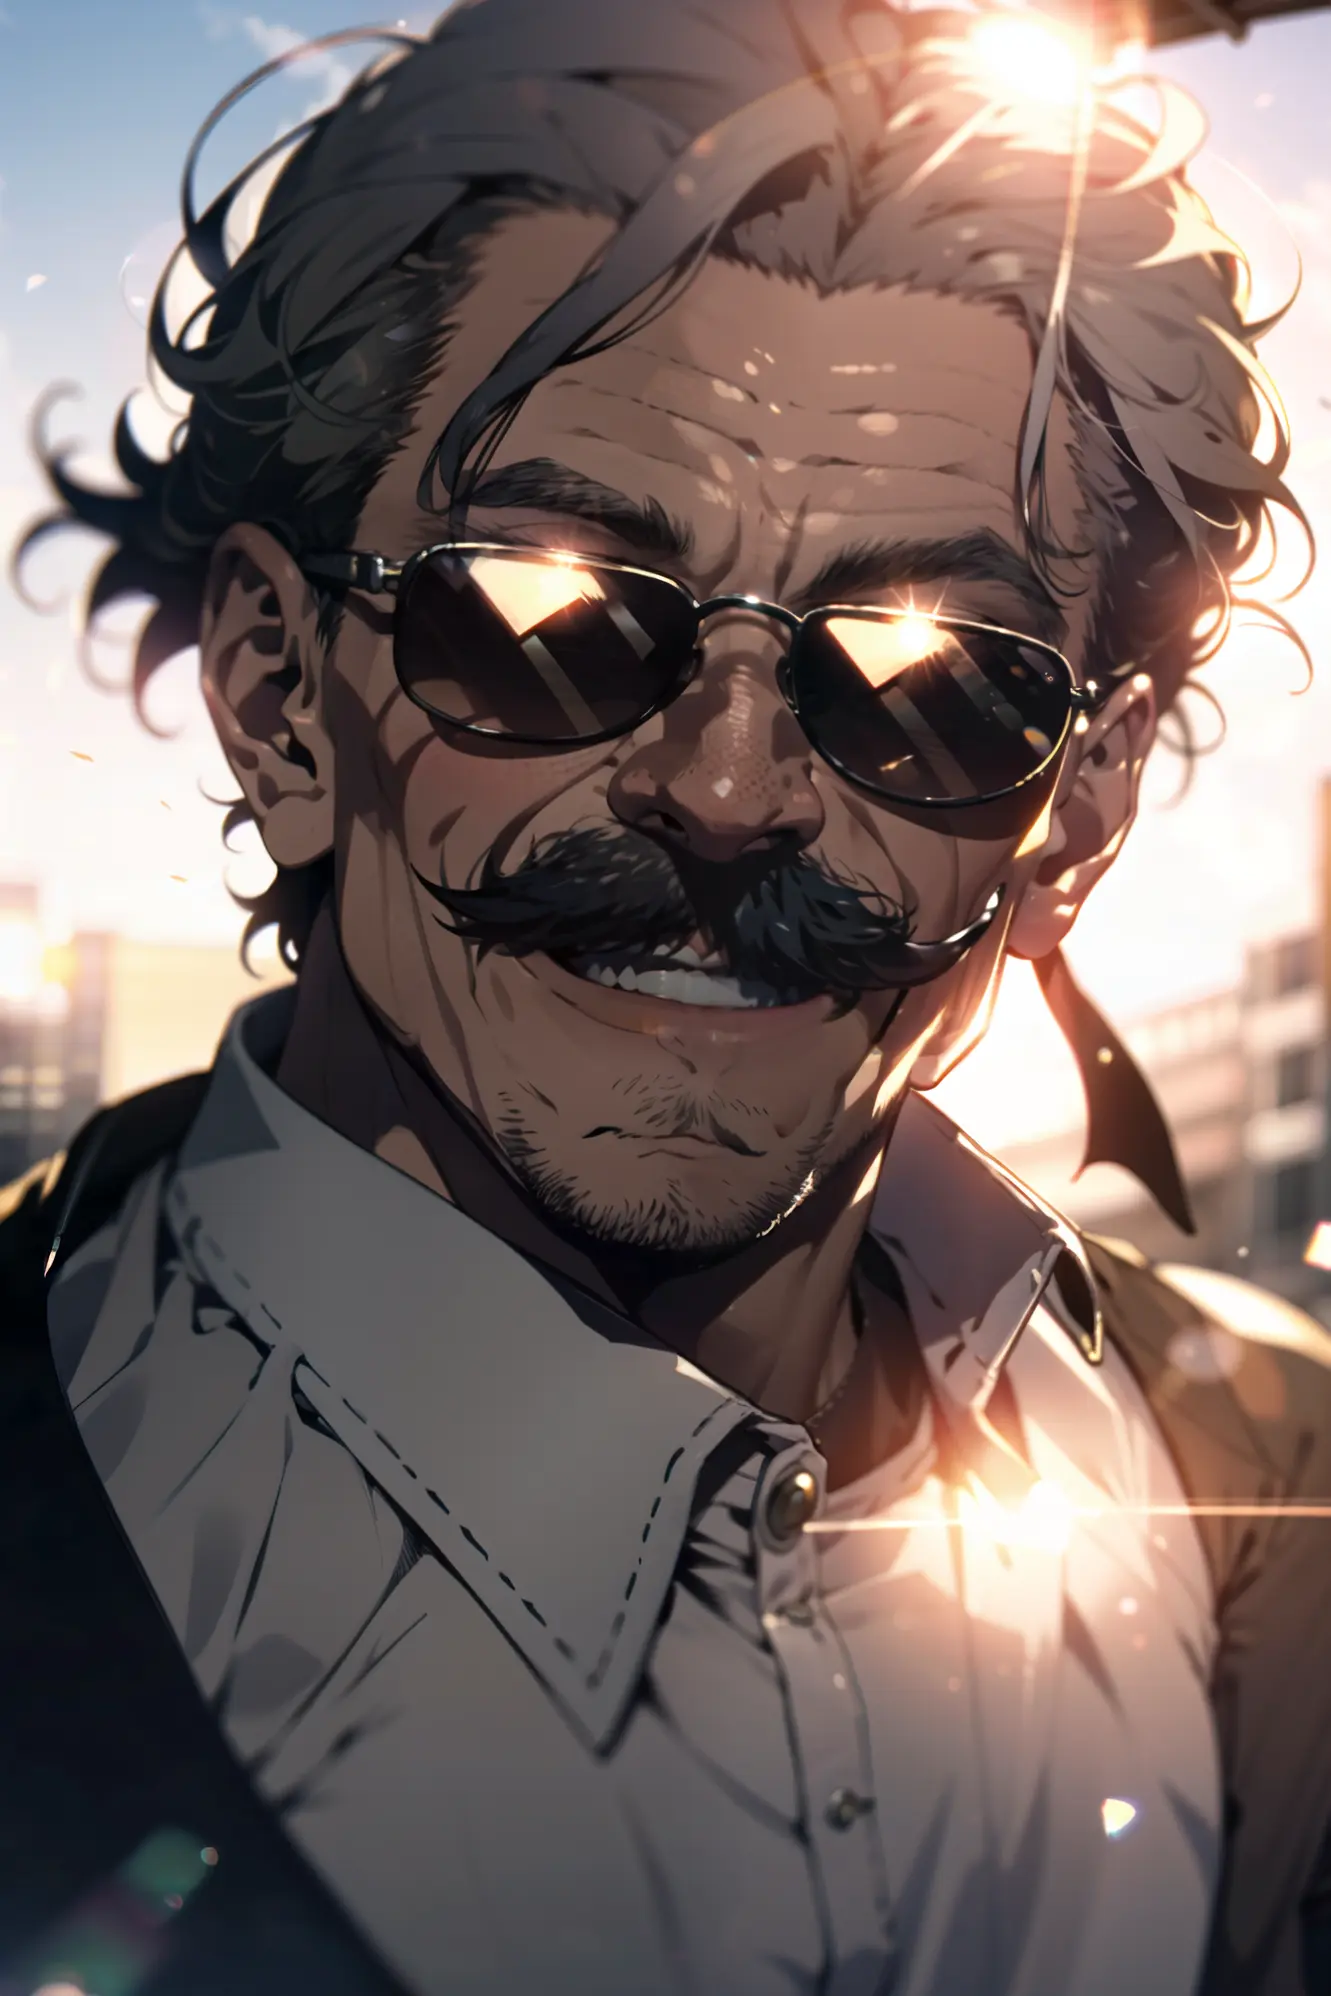 Un hombre viejo, parte superior del cuerpo, gafas de sol puestas, Bigote largo e intrincado, enorme riendo, sun glare, bokeh, profundidad de campo, fondo borroso, partículas de luz